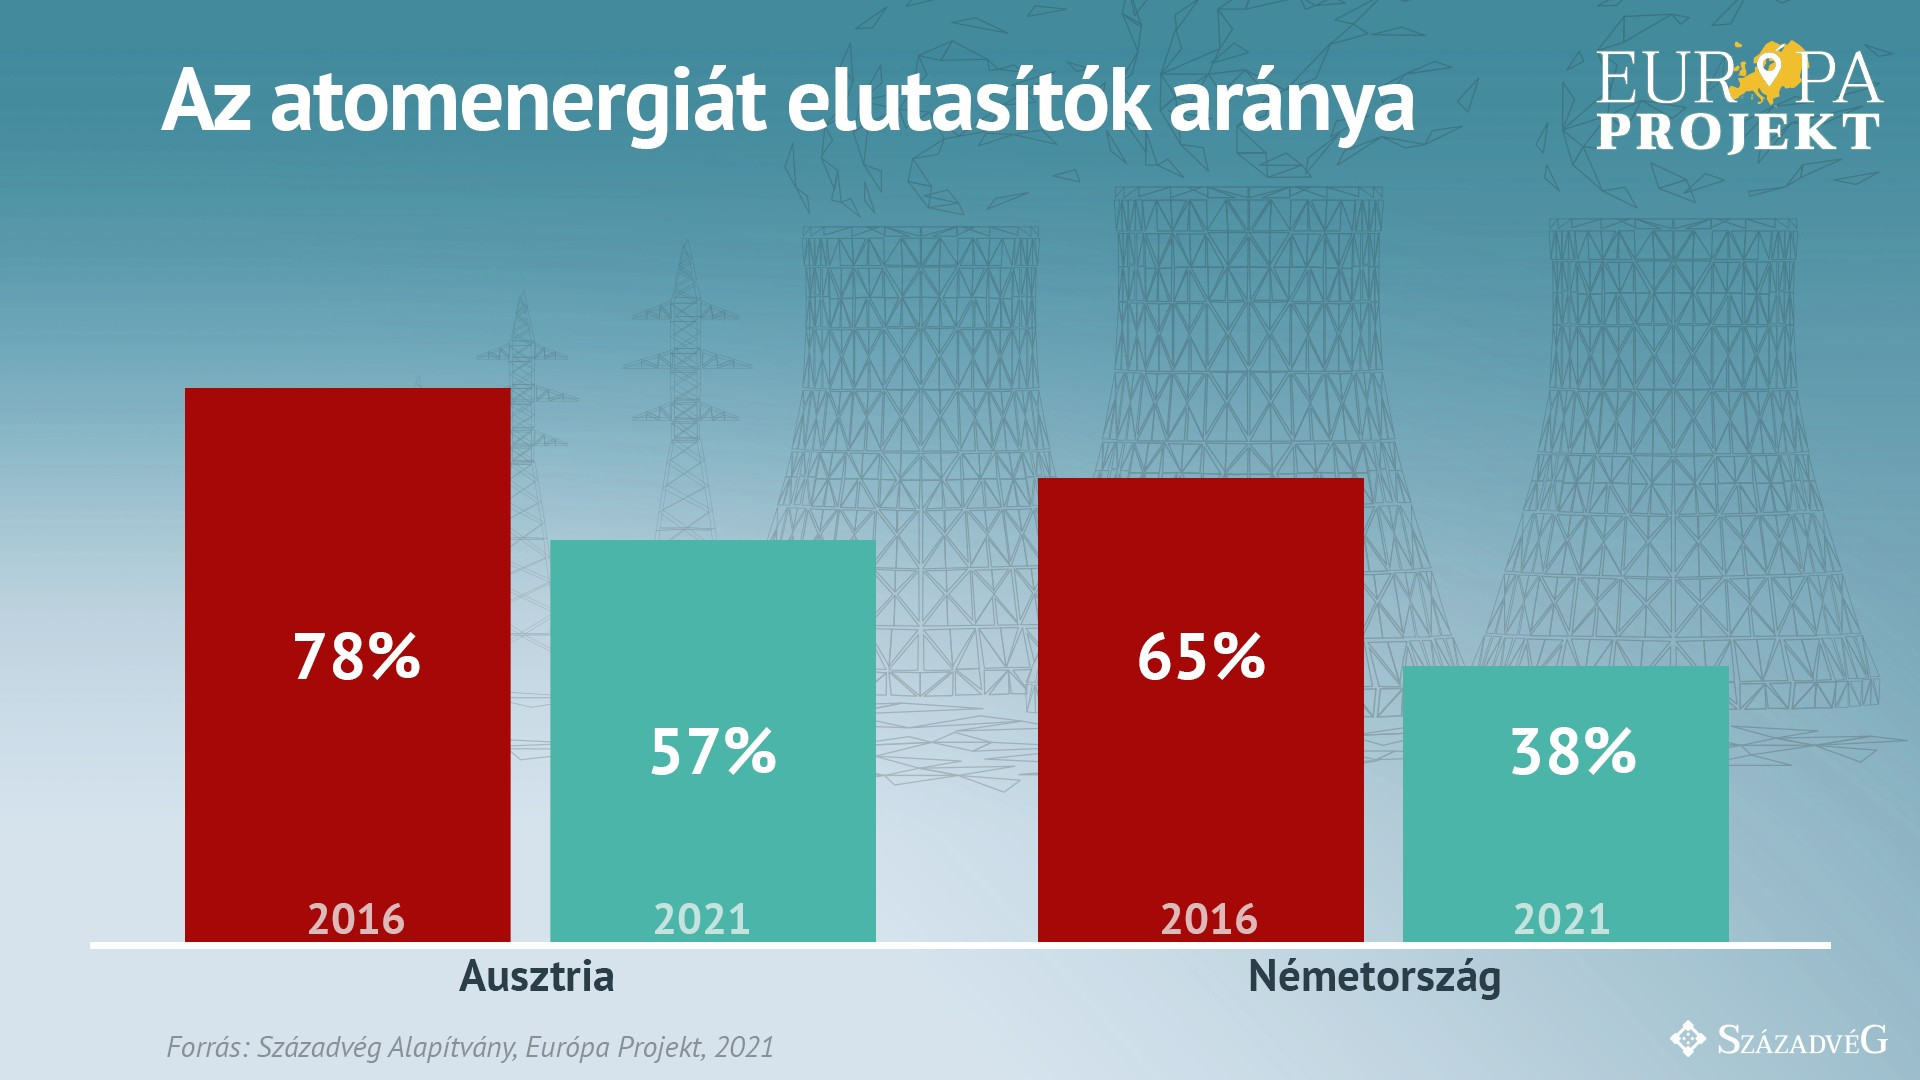 Ausztriában és Németországban is jelentősen csökkent az atomenergiák elutasítok aránya